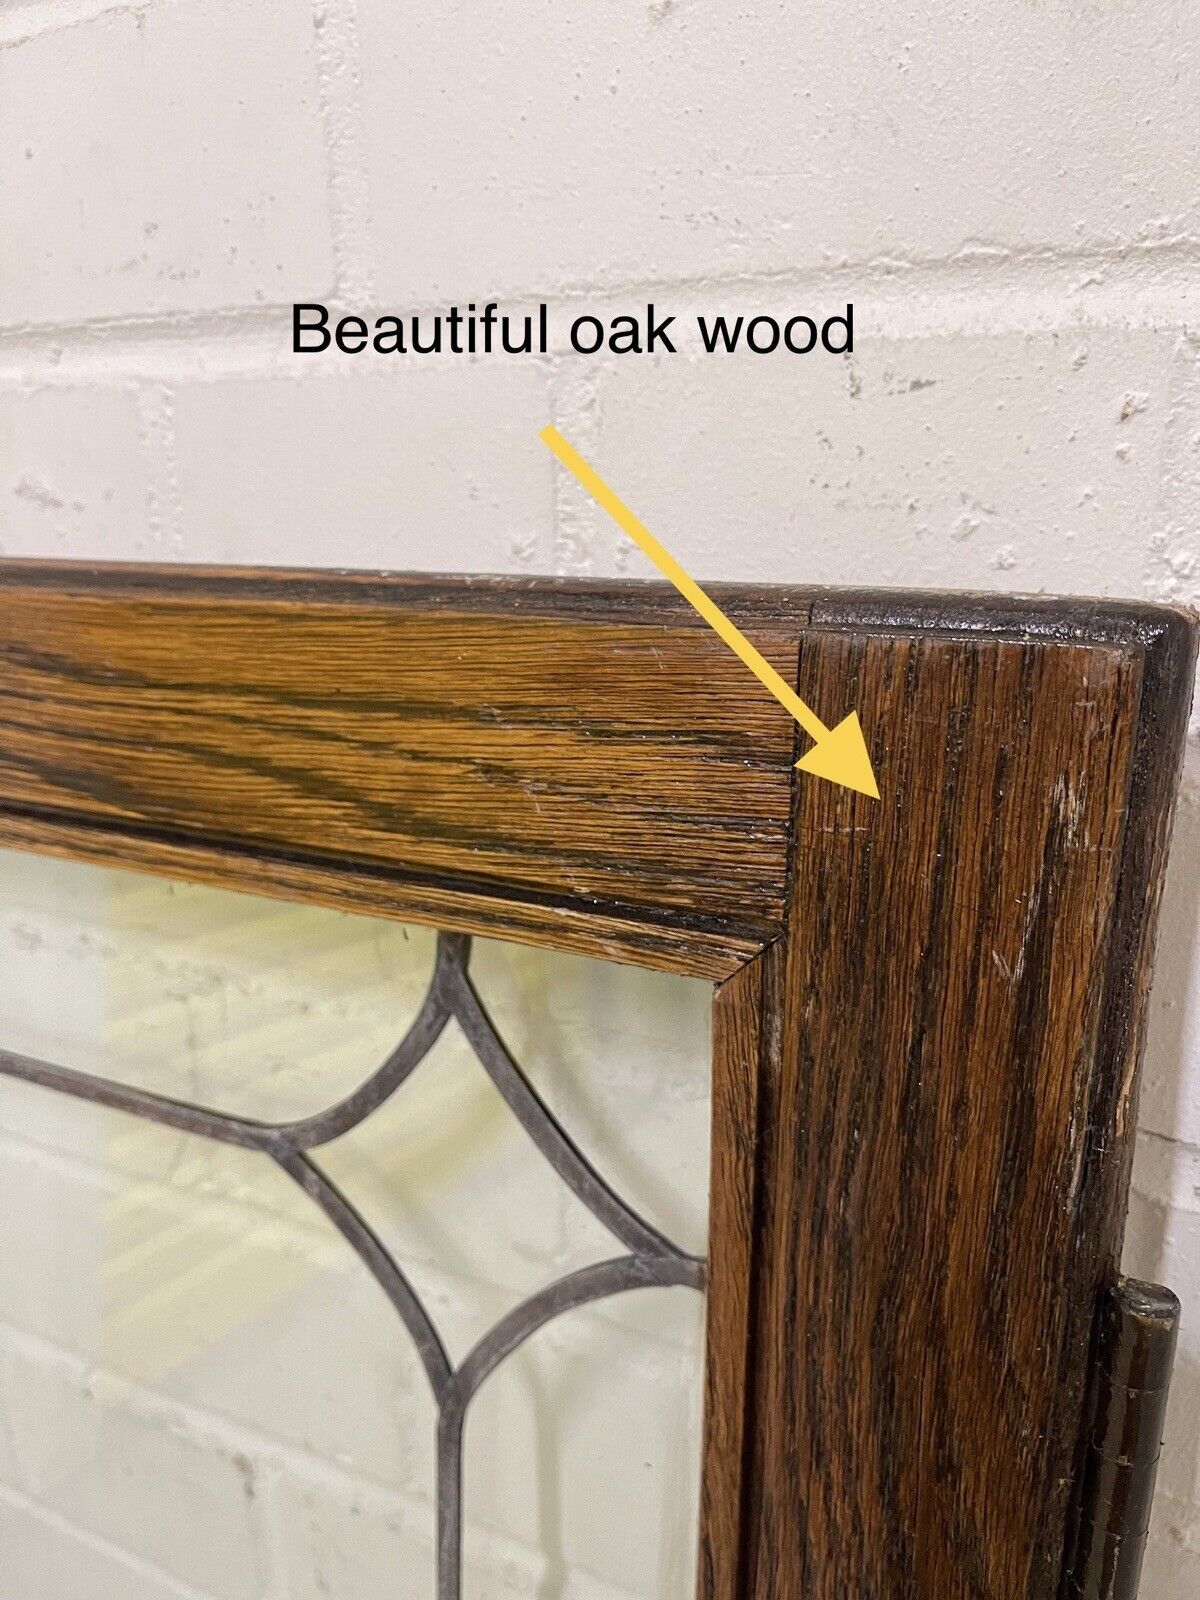 Job Lot Of Four Double Glazed Leaded Trim Oak Wooden Windows 1110 x 515mm